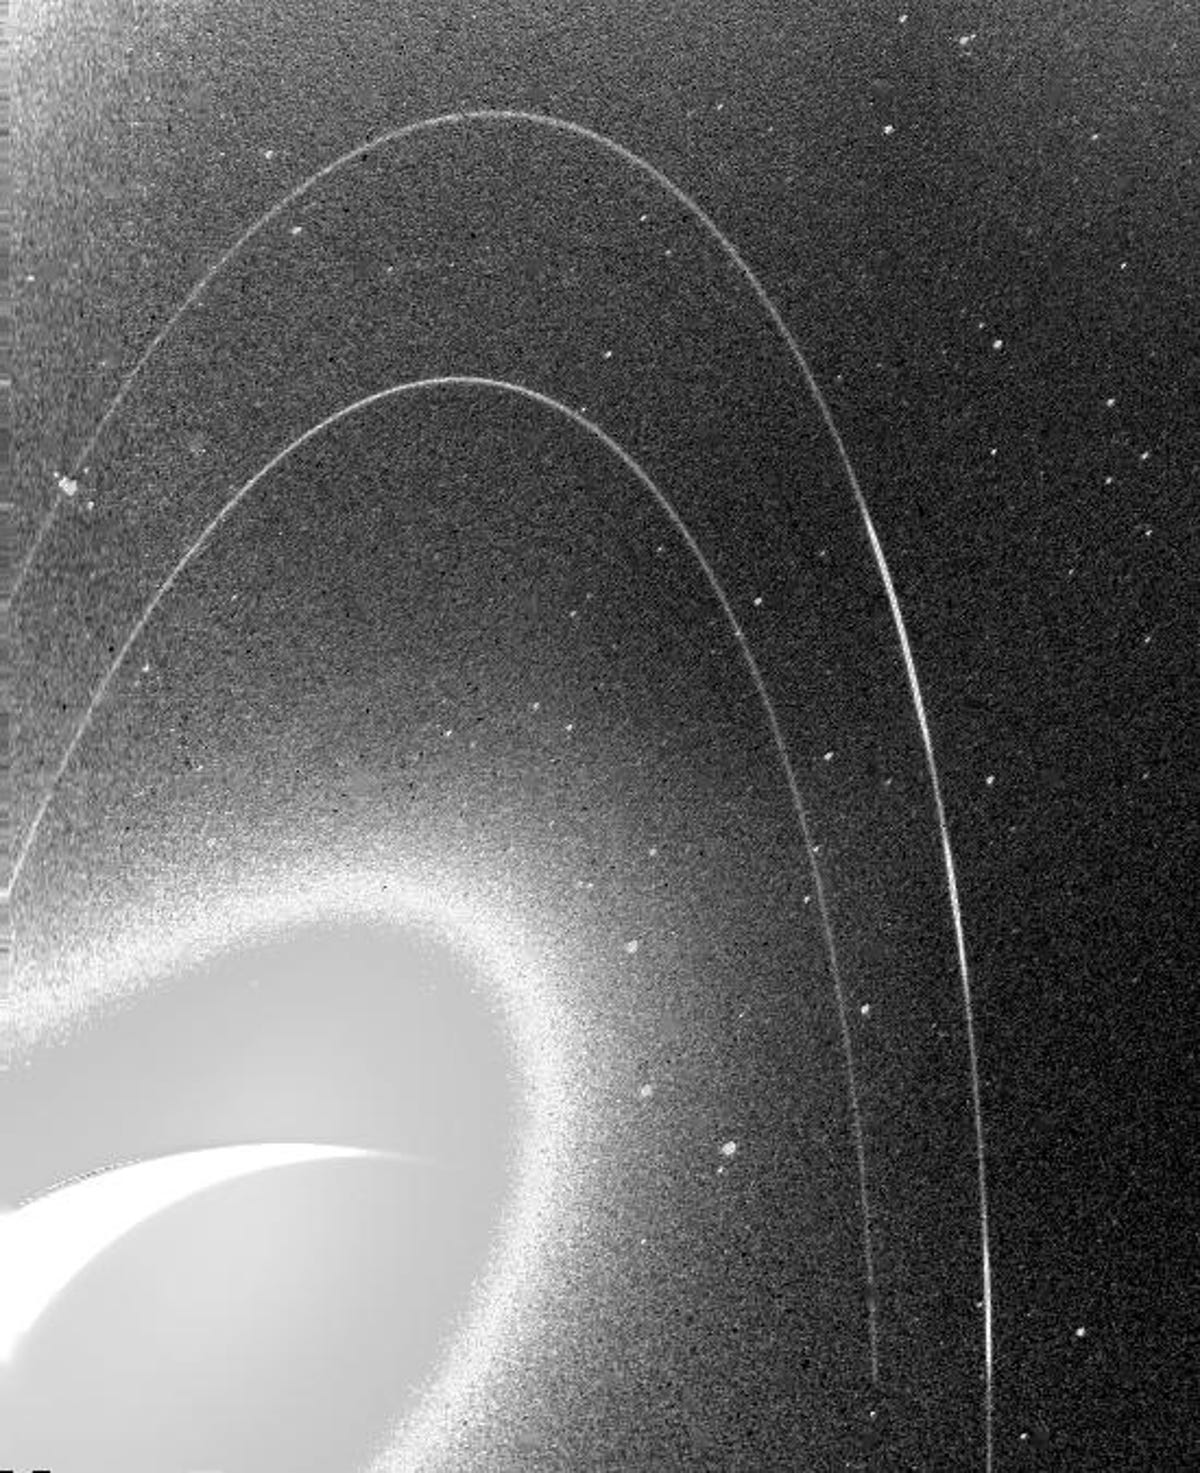 L'immagine sgranata in bianco e nero mostra i deboli anelli di Nettuno.